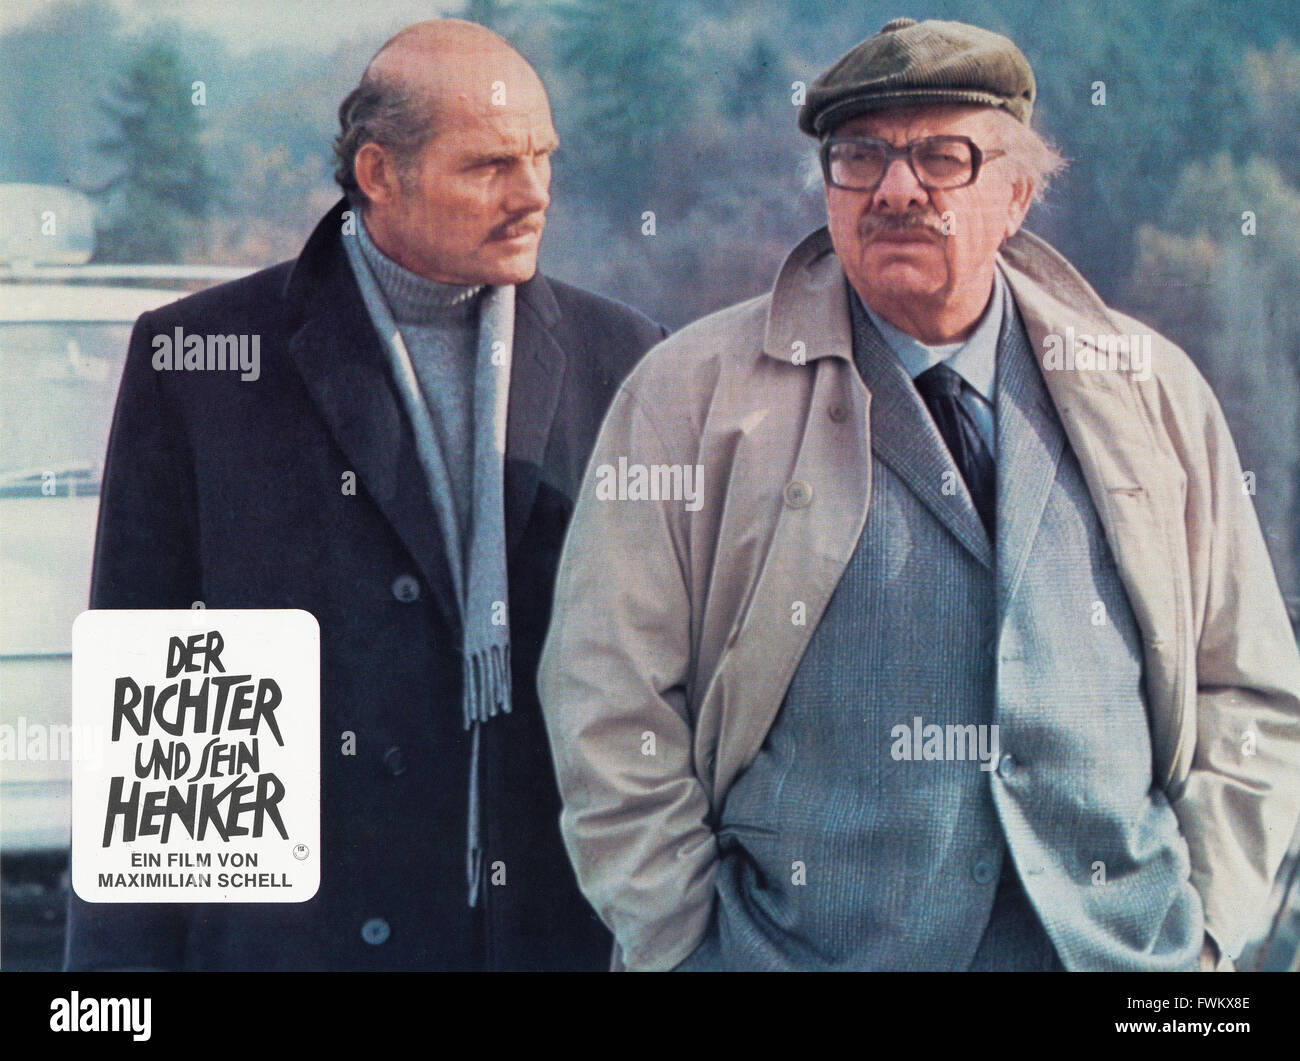 Der Richter und sein Henker, aka: Fine del gioco, Deutschland/Italien 1975, Regie: Maximilian Schell, Darsteller: Robert Shaw (links), Martin Ritt Foto Stock